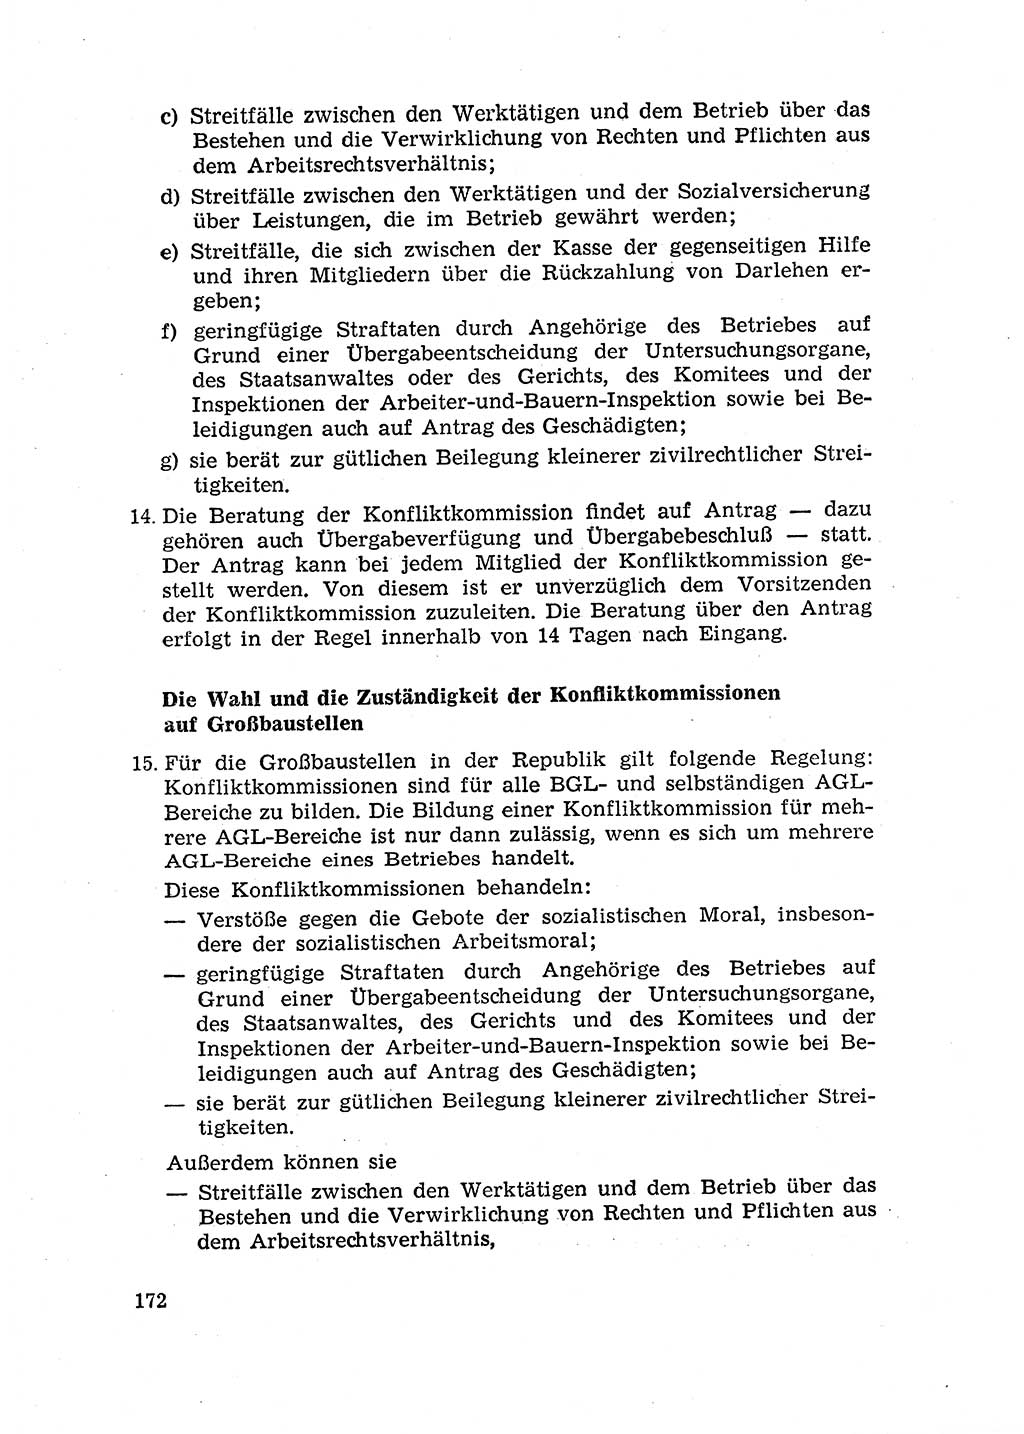 Rechtspflegeerlaß [Deutsche Demokratische Republik (DDR)] 1963, Seite 172 (R.-Pfl.-Erl. DDR 1963, S. 172)